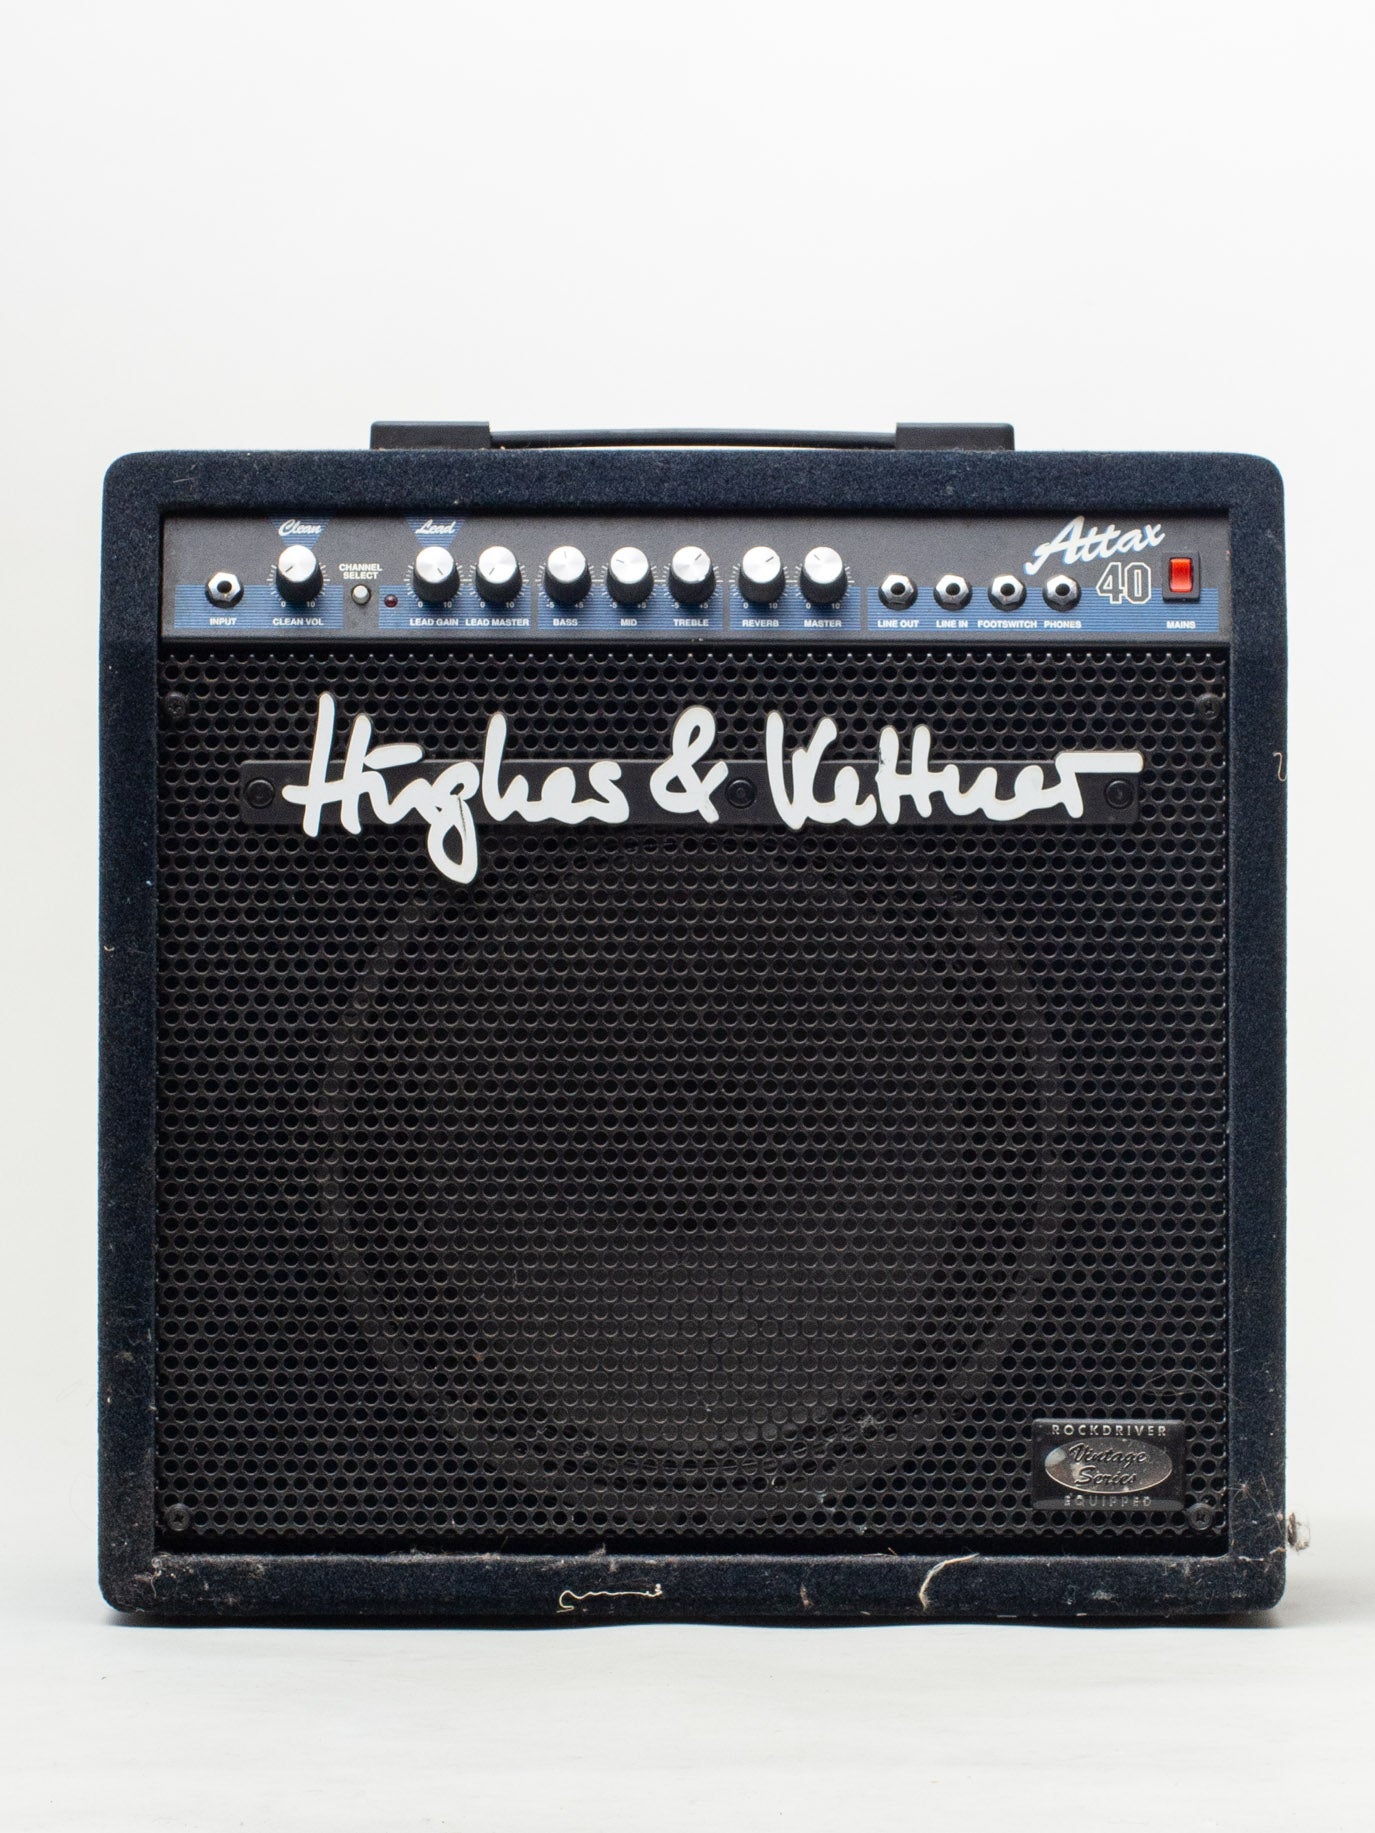 高評価定番Hughes & Kettner Attax 40 ギターアンプ 音出しOK 中古 オーディオ ヒュースアンドケトナー ドイツ製 コンボ